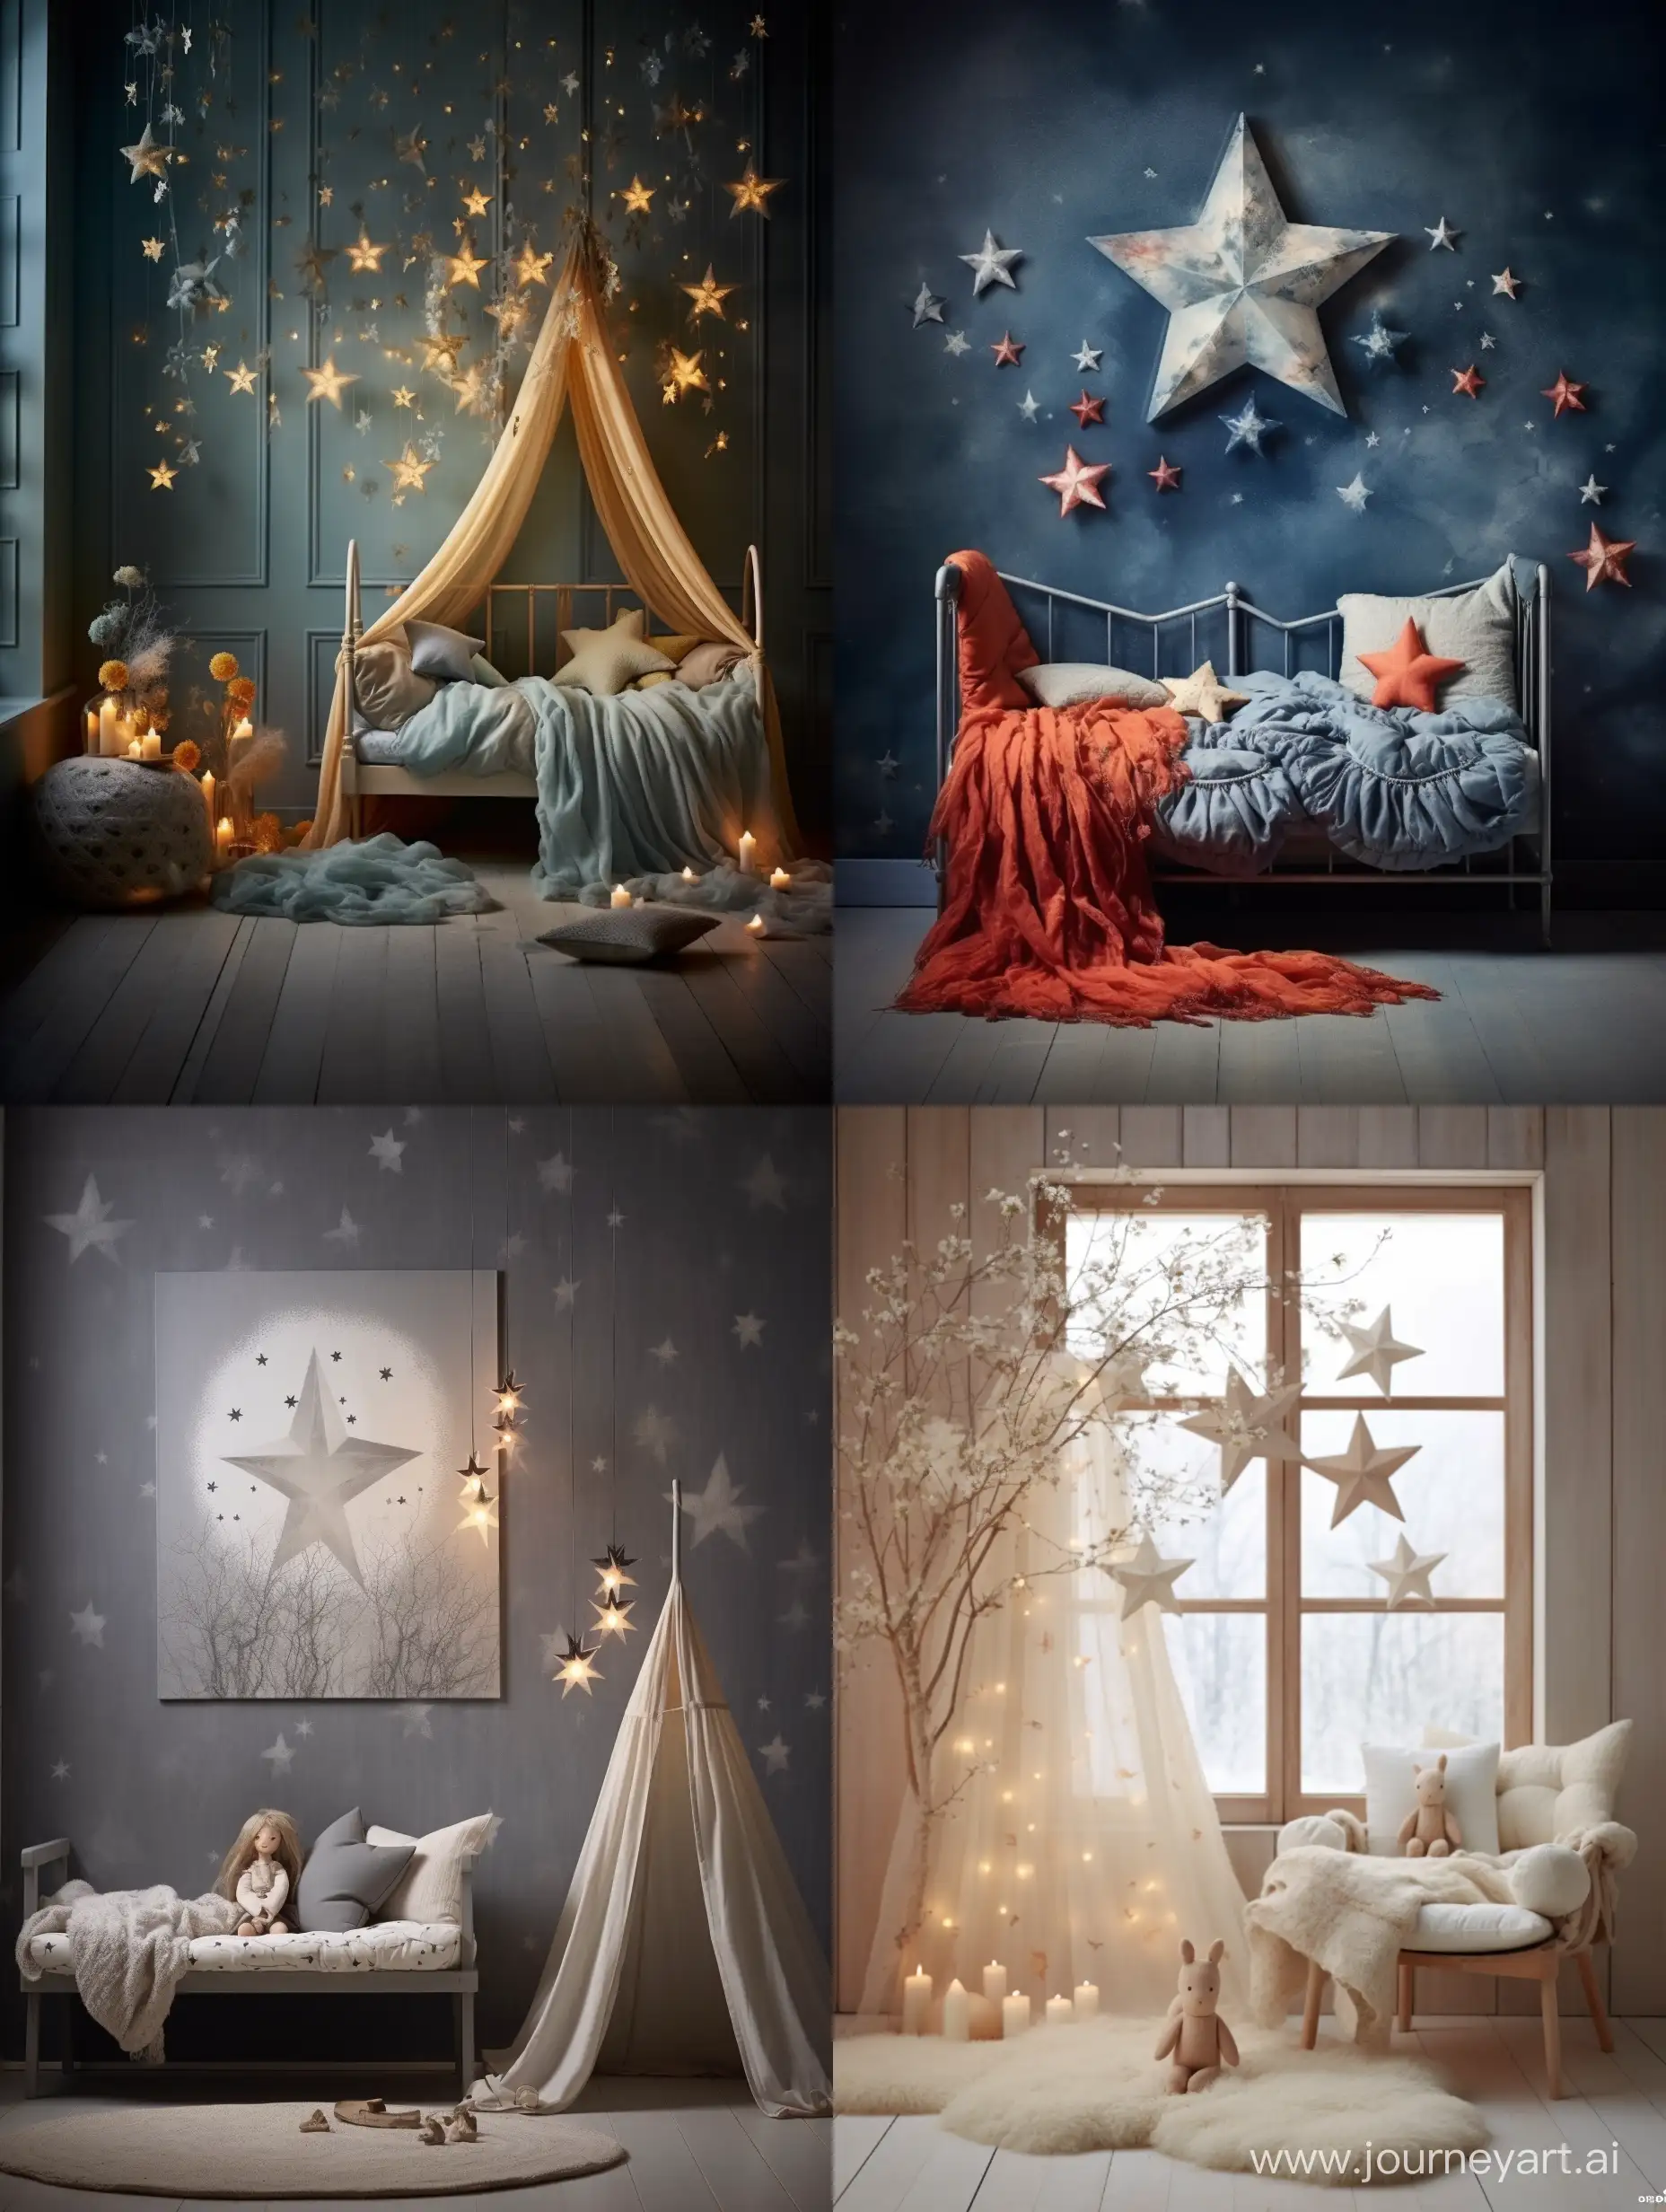 Burda Stil.  Kinderzimmer Gestaltung. Eine hervorragende preisgekröntes Fotografie. Auf dem Foto ein wunderschönes aus Märchenwolle gefilzte Stern zu sehen, mit feiner Stickereien verschönert.  